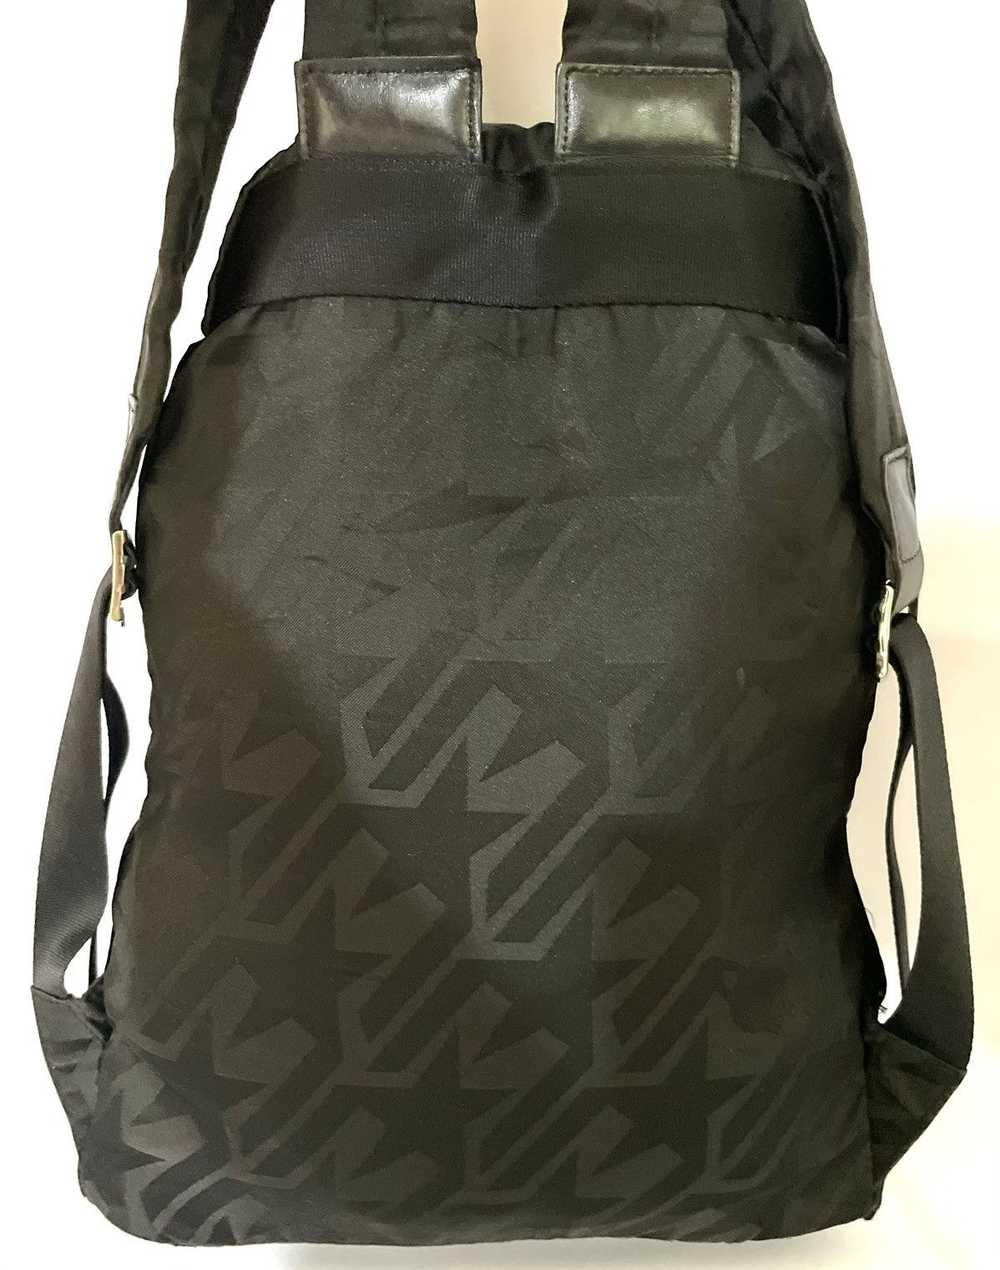 Vivienne Westwood Nylon Star Orb Backpack Bag - image 9